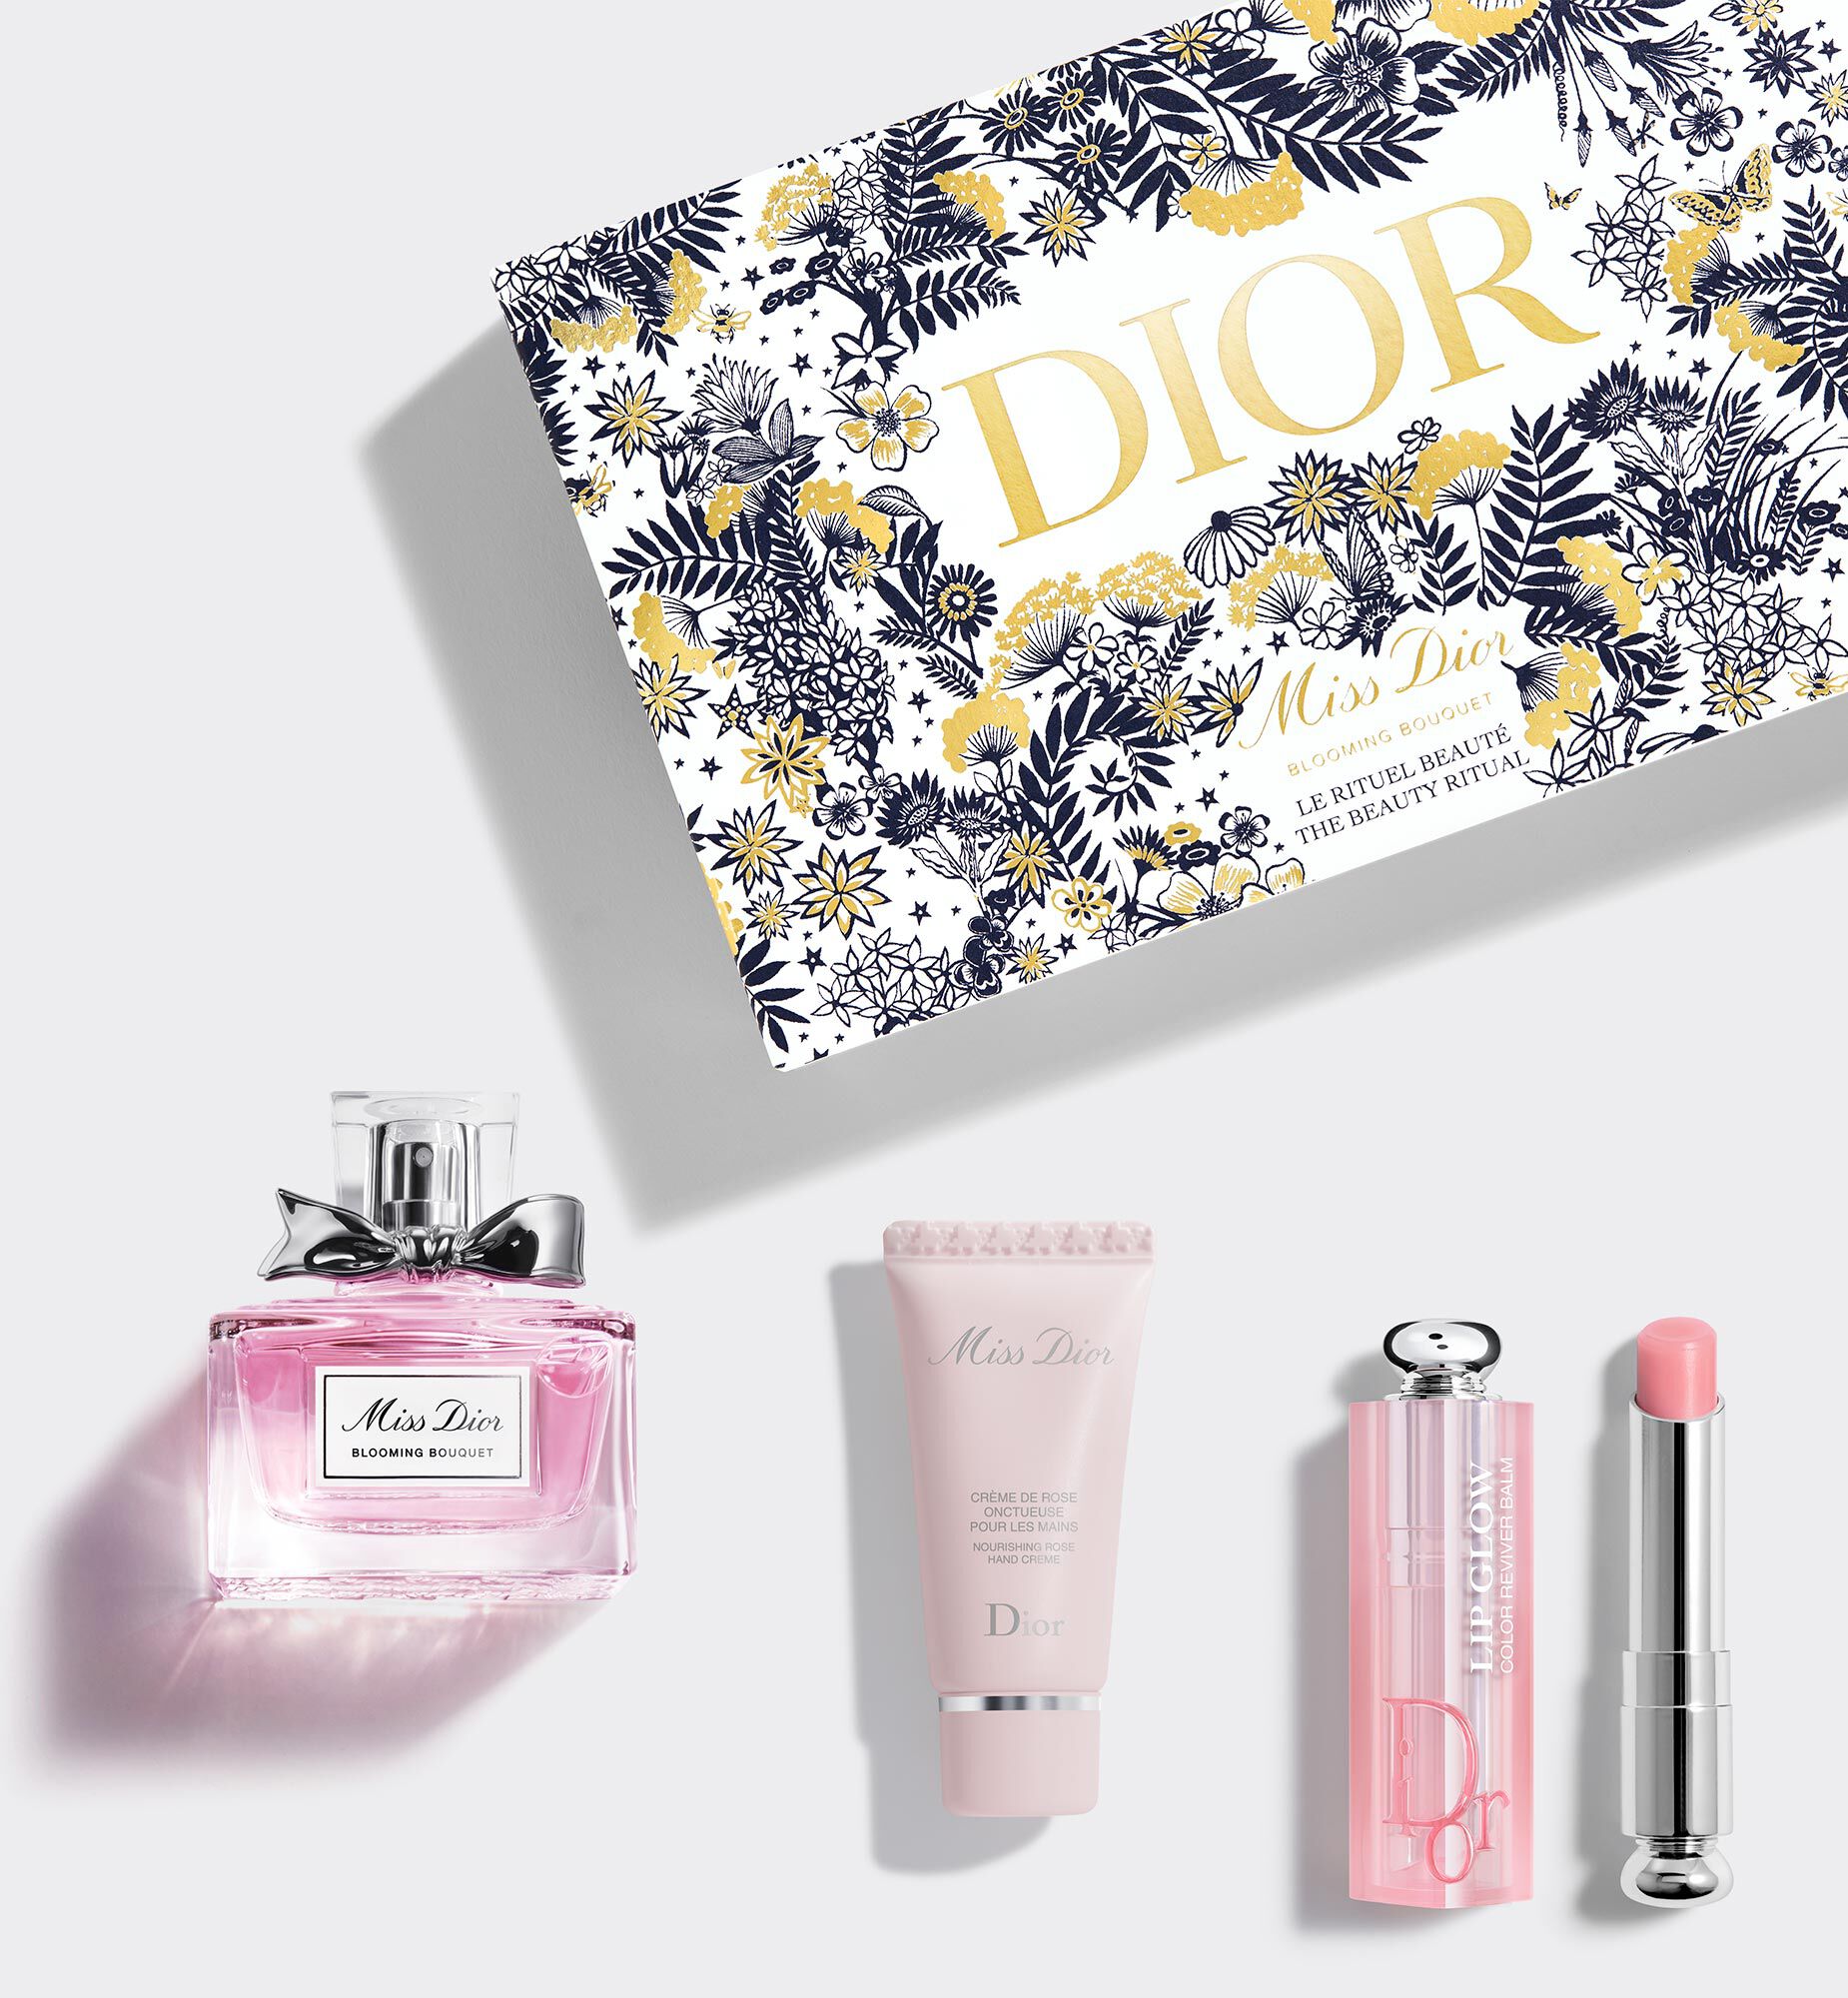 年度末セール Dior化粧品セット トライアルセット/サンプル